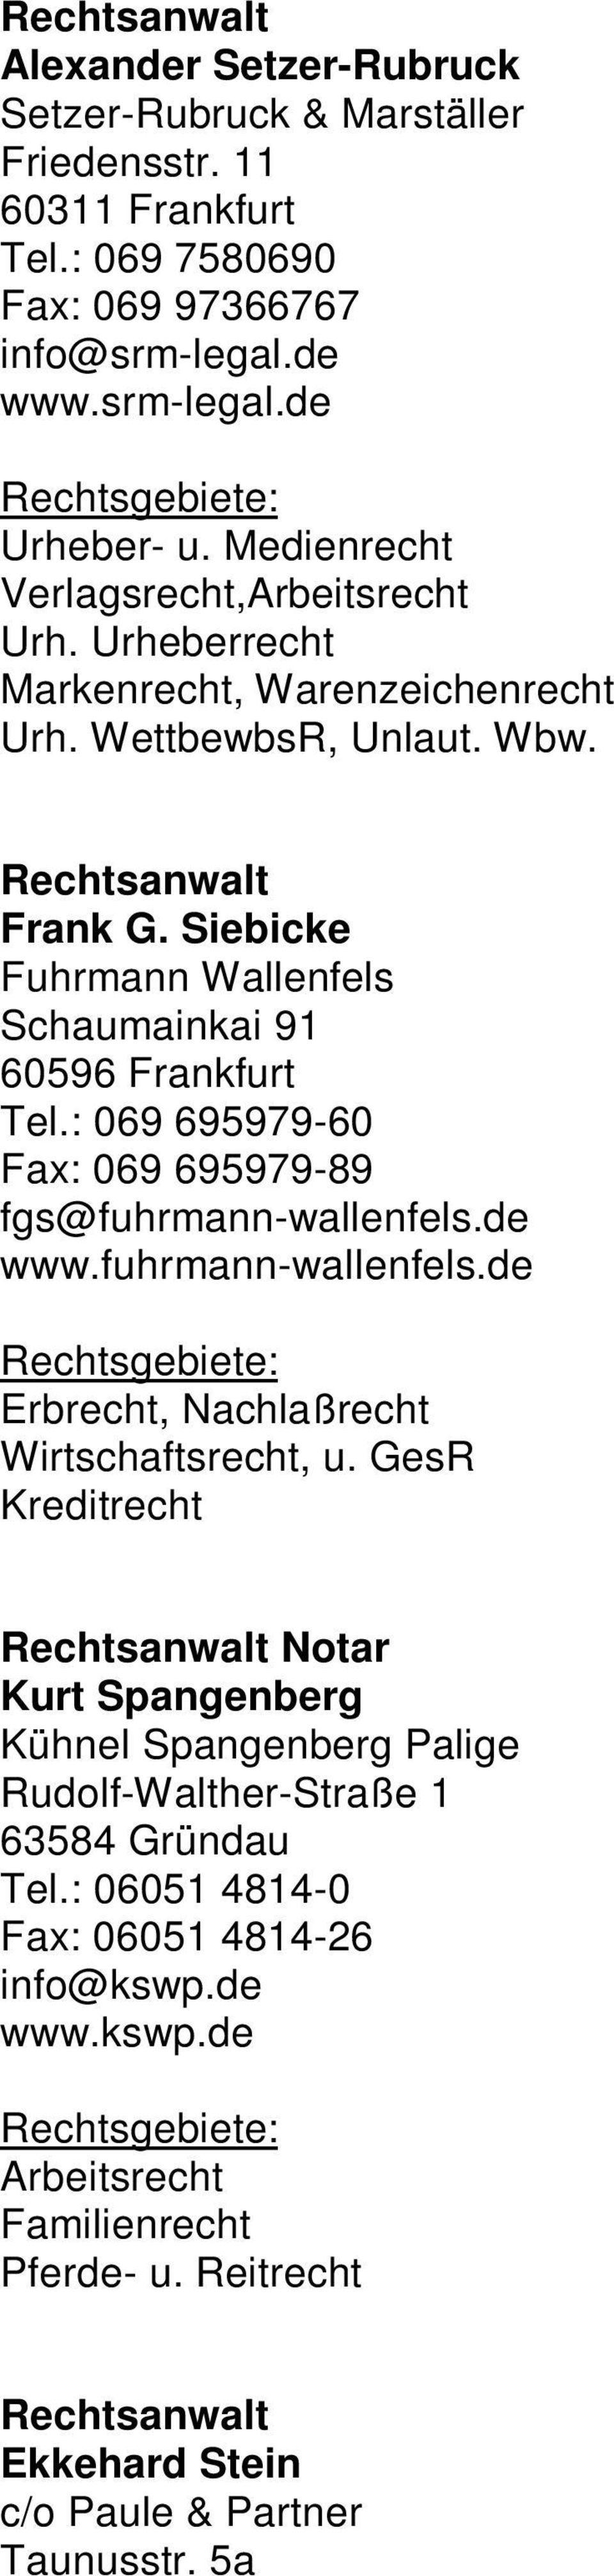 Siebicke Fuhrmann Wallenfels Schaumainkai 91 60596 Frankfurt Tel.: 069 695979-60 Fax: 069 695979-89 fgs@fuhrmann-wallenfels.de www.fuhrmann-wallenfels.de Erbrecht, Nachlaßrecht Wirtschaftsrecht, u.